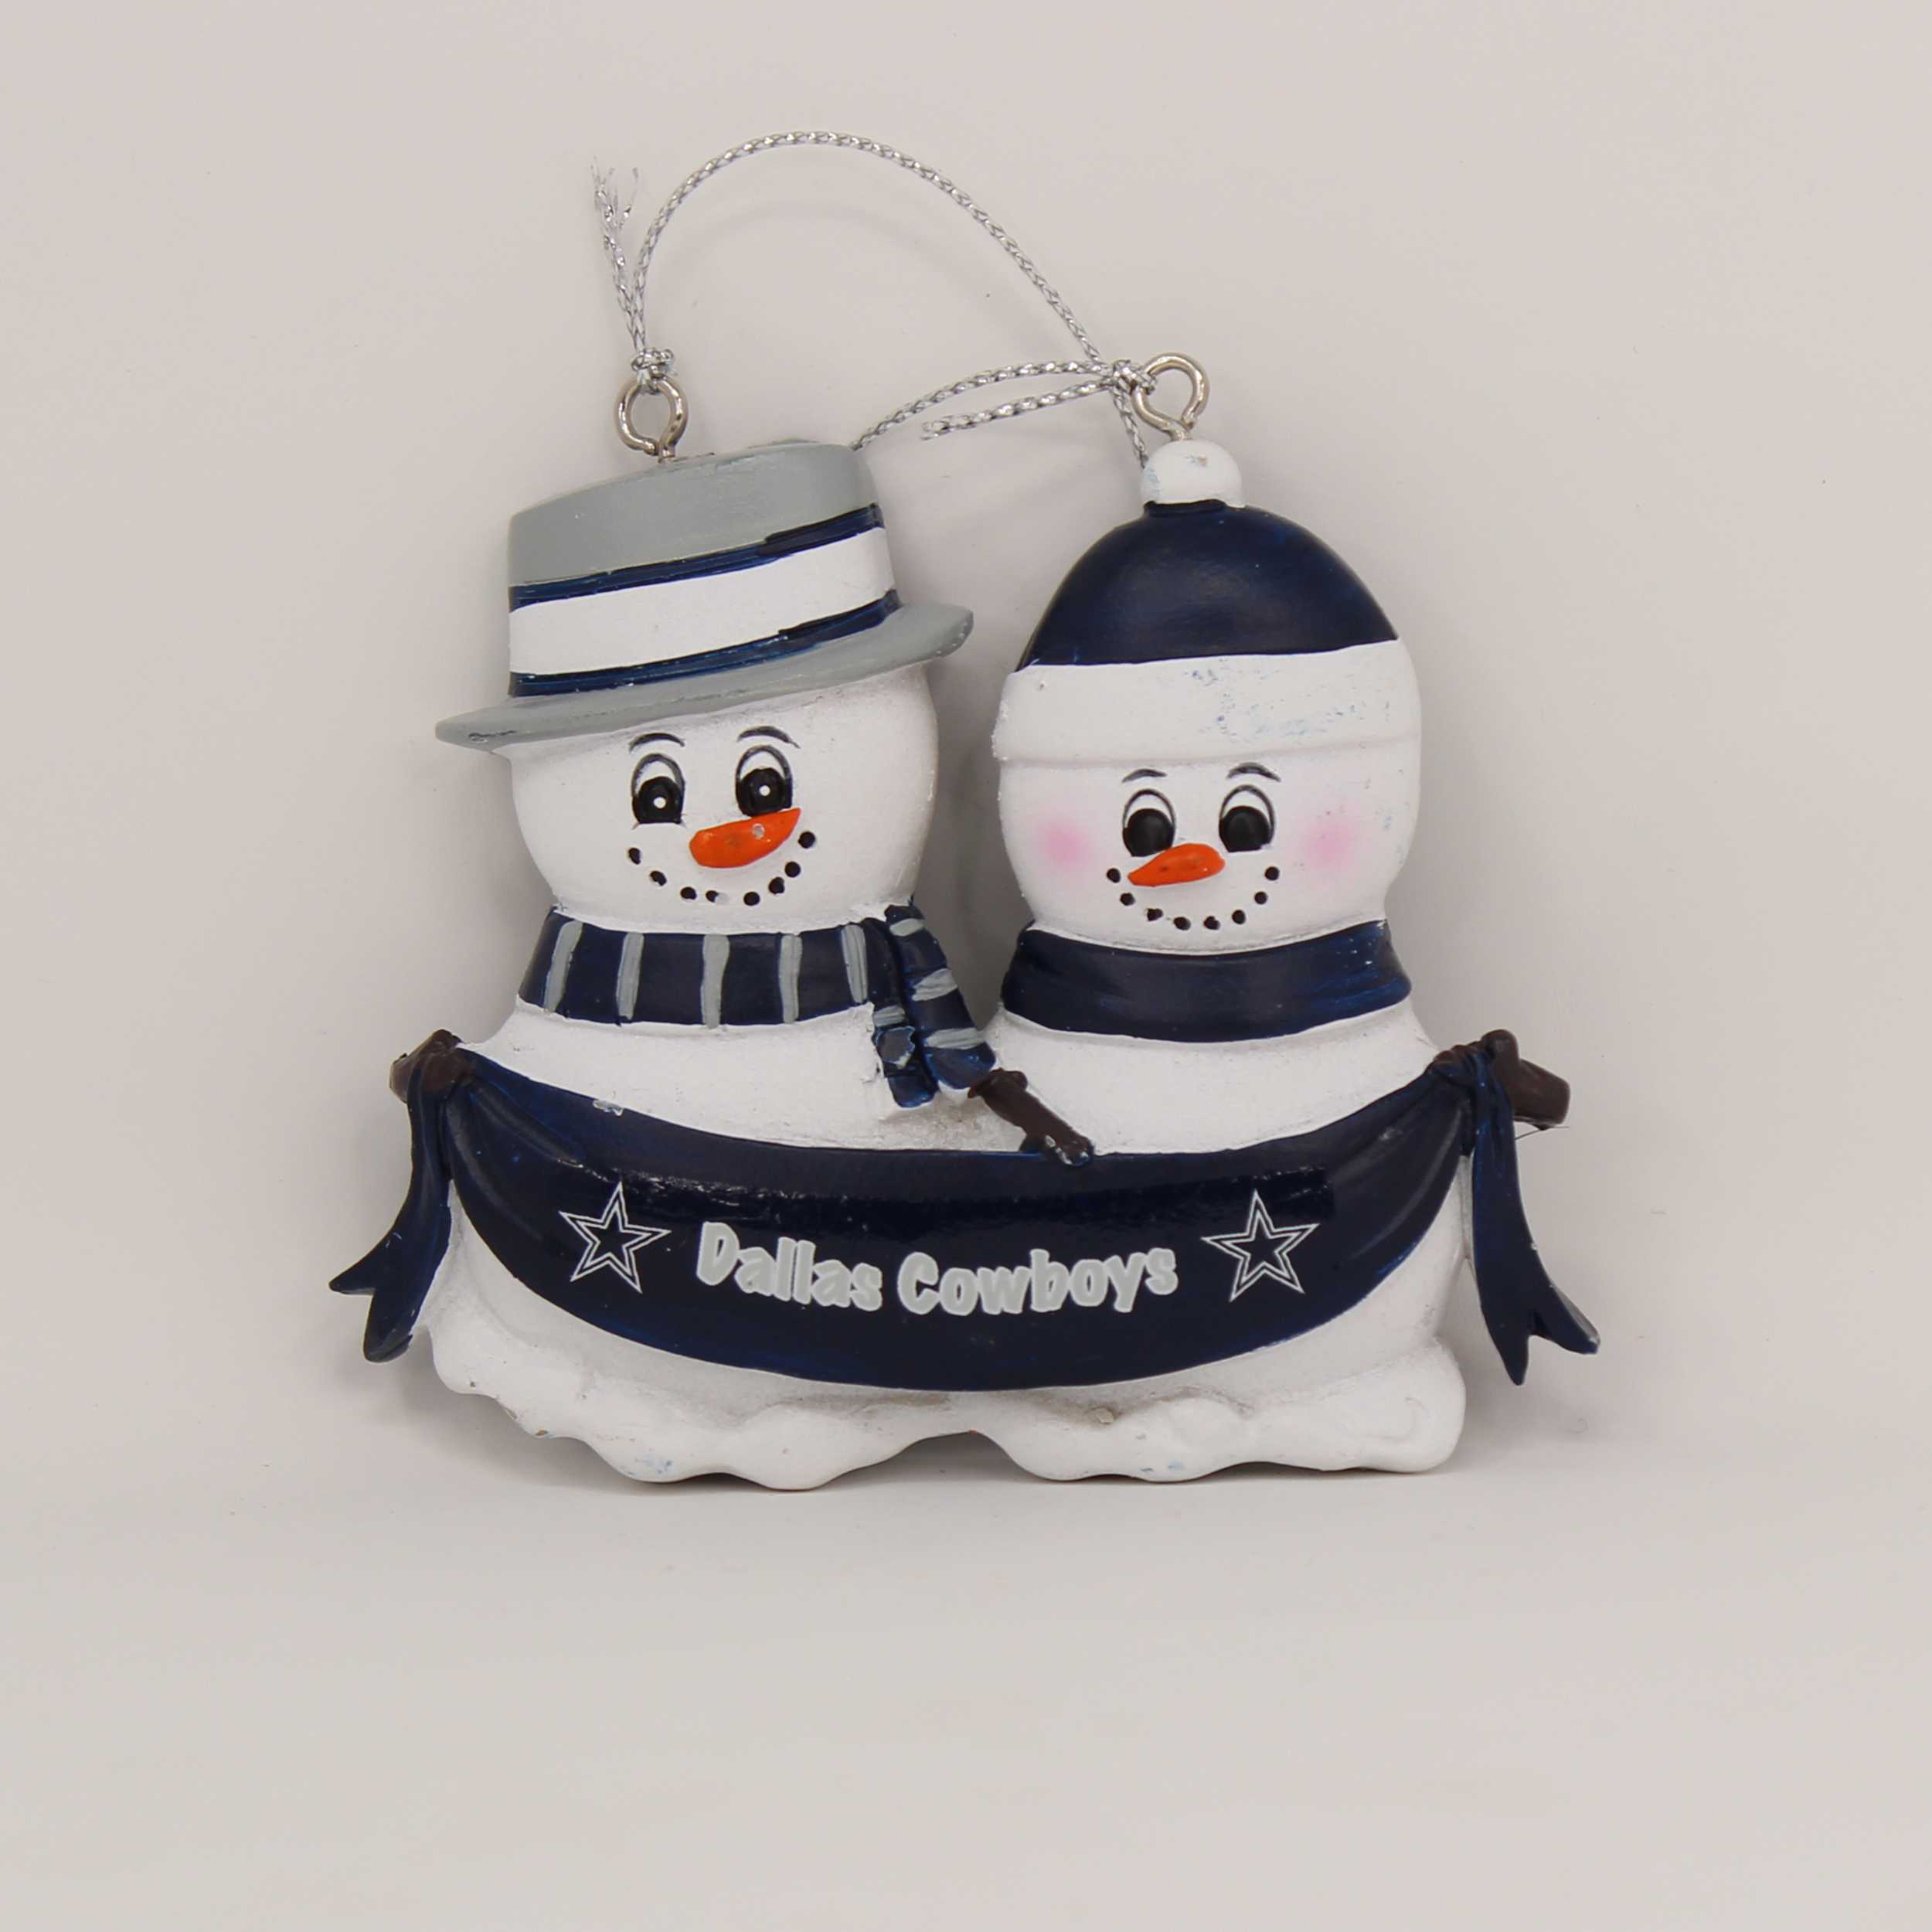 Personalized Family Ornament Dallas Cowboys